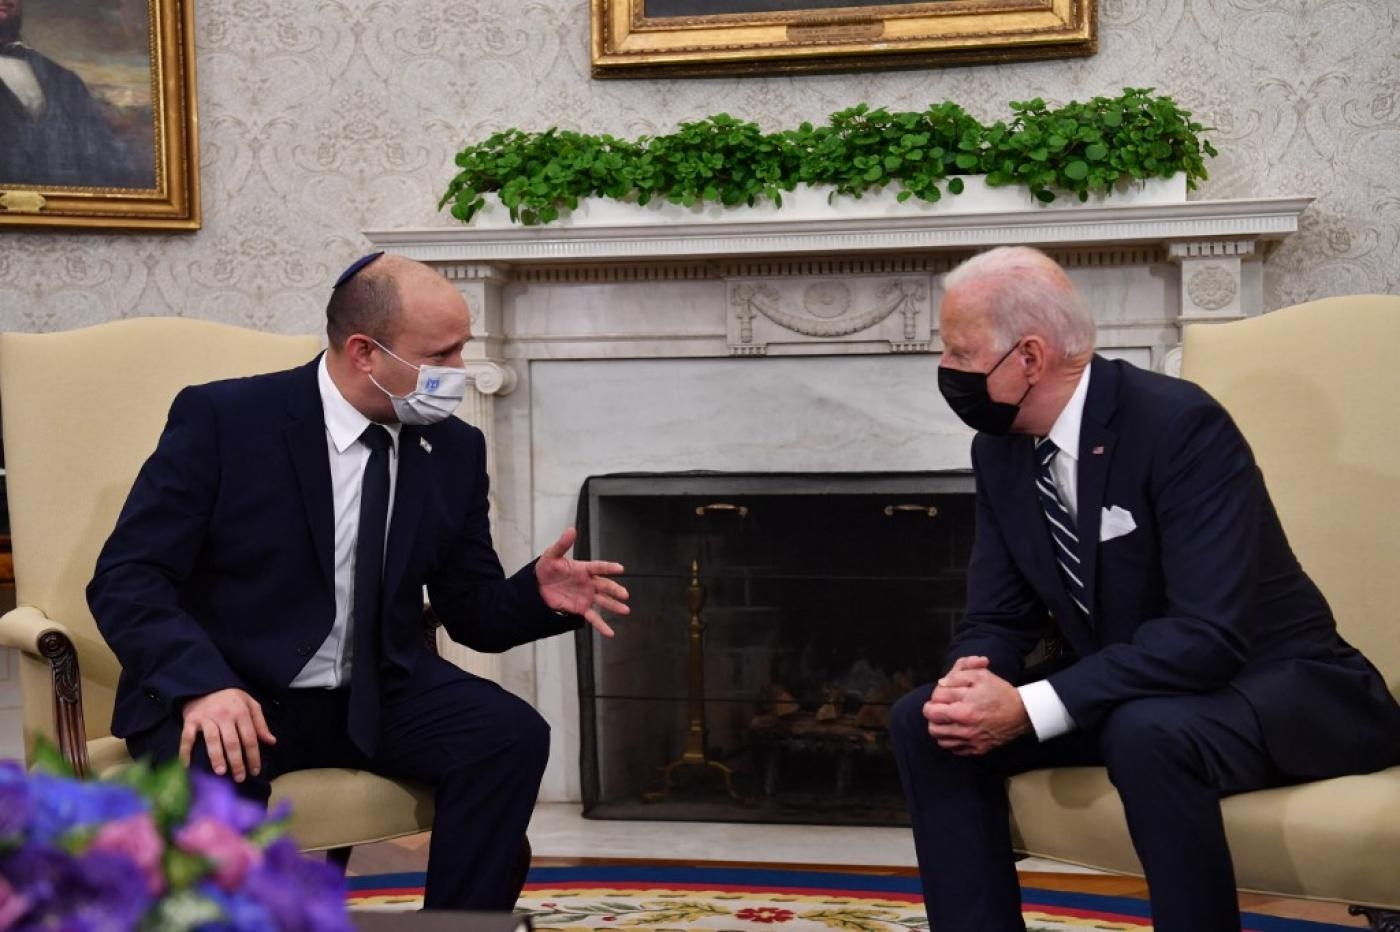 Le président américain Joe Biden rencontre le Premier ministre israélien Naftali Bennett dans le Bureau ovale de la Maison-Blanche, le 27 août 2021 à Washington (AFP)